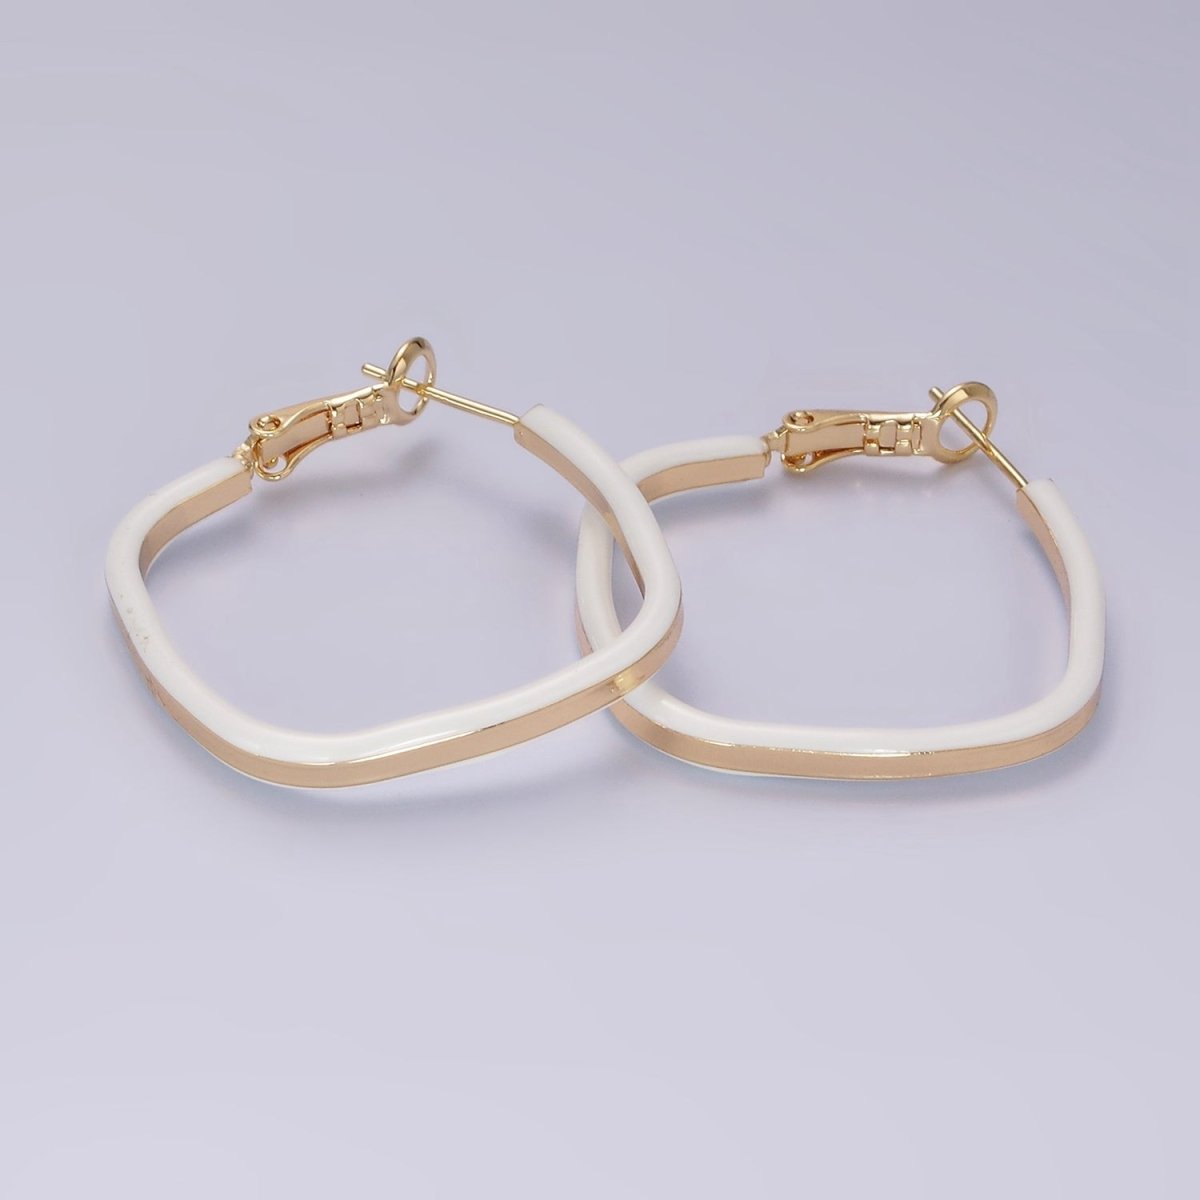 14K Gold Filled White, Pink, Blue Enamel Boxy Rhombus Hinge Hoop Earrings | AE180 - AE182 - DLUXCA